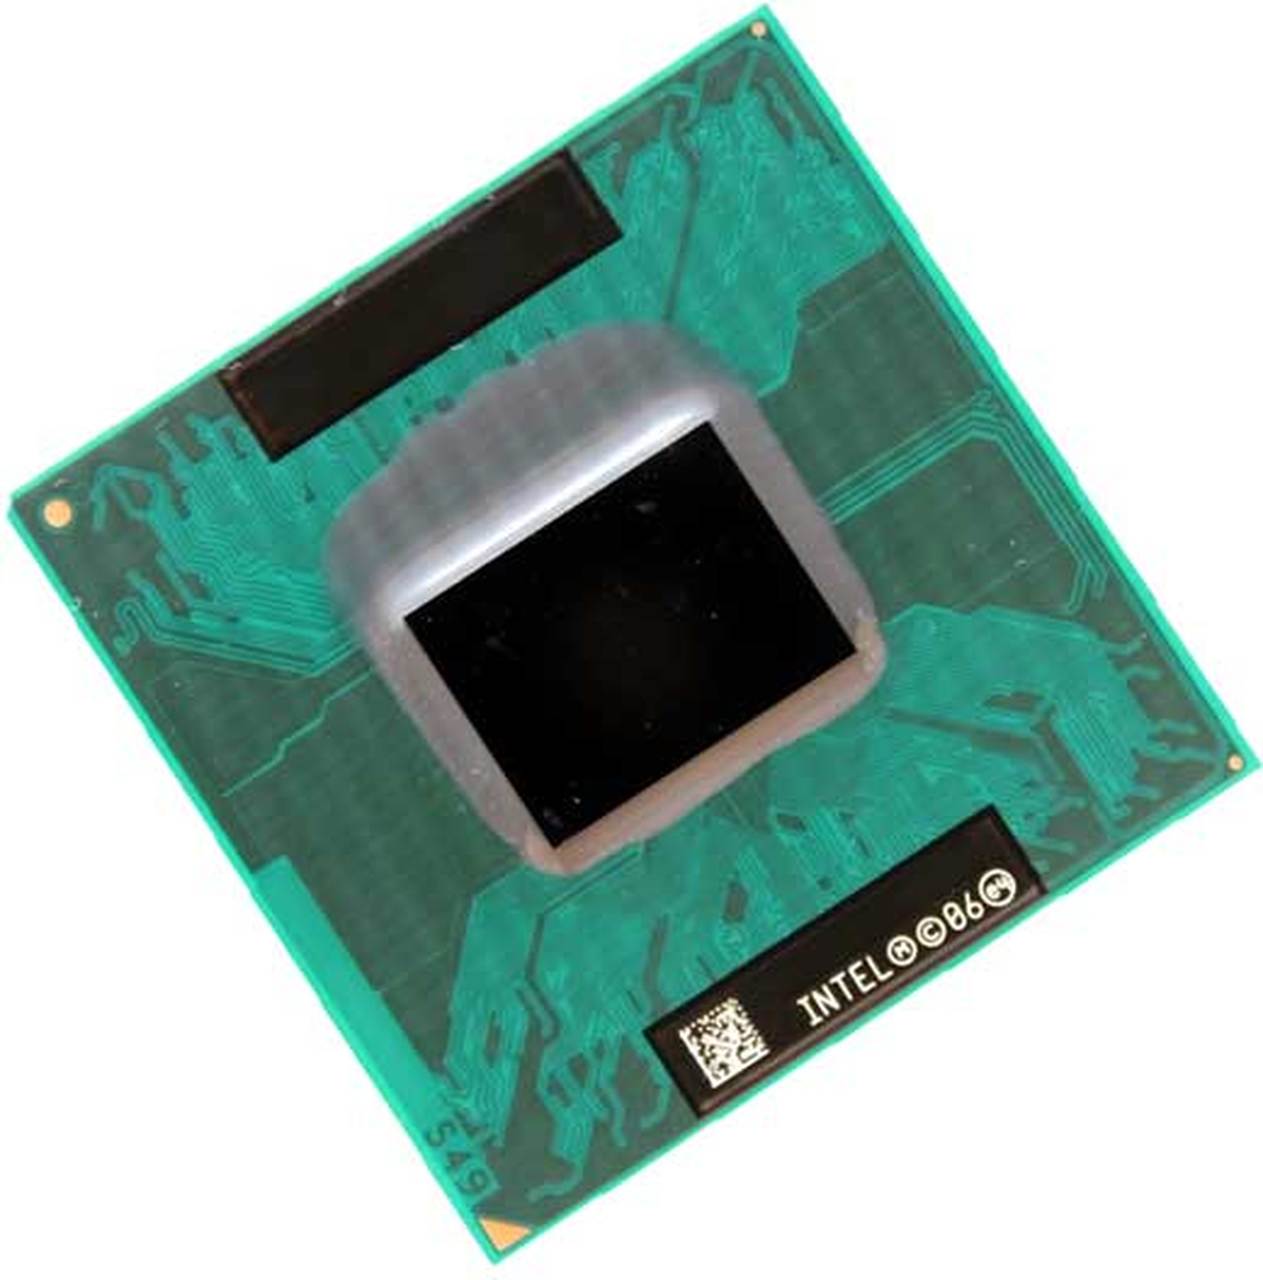 430852-001 | HP Core Solo T1350 1 Core 1.86GHz PGA478 2 MB L2 Processor